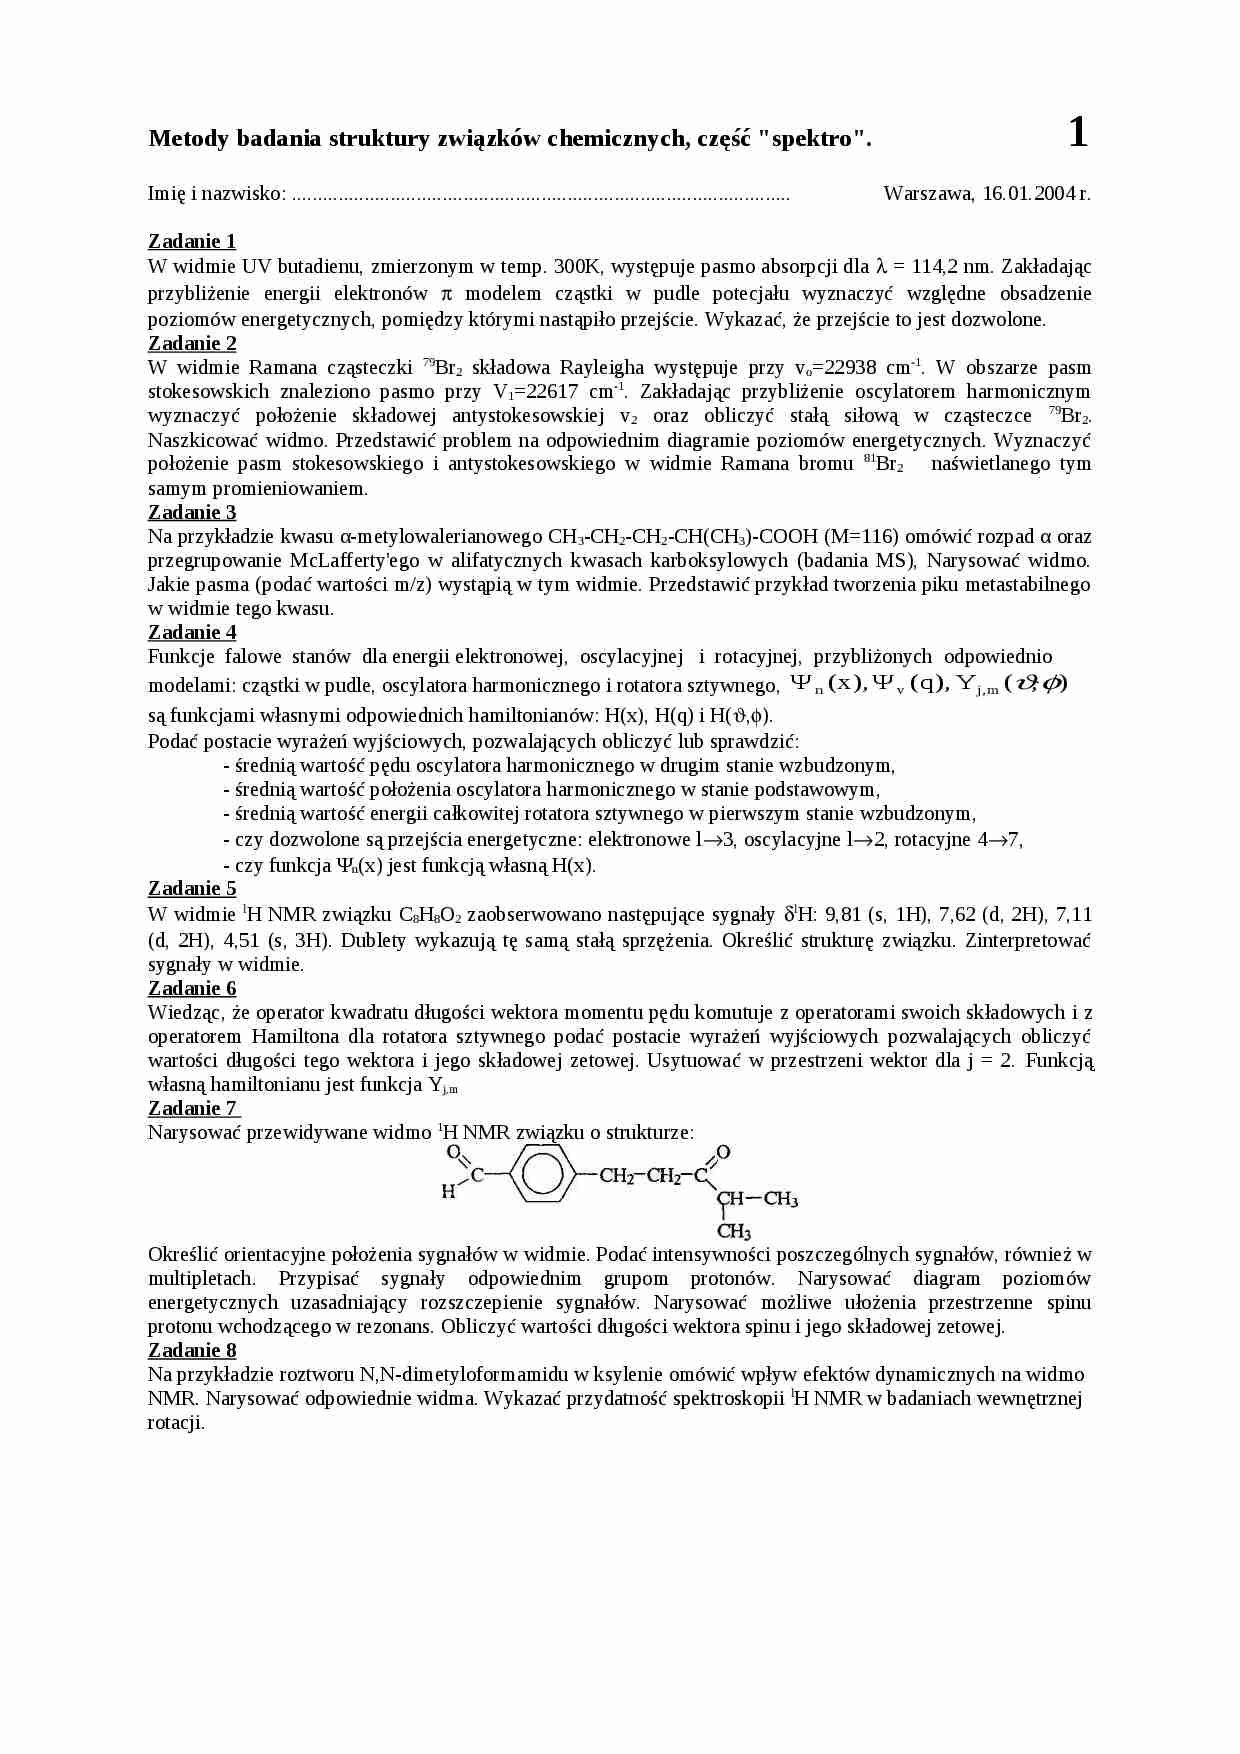 Metody badania struktury związków chemicznych - wykład - Funkcje falowe - strona 1